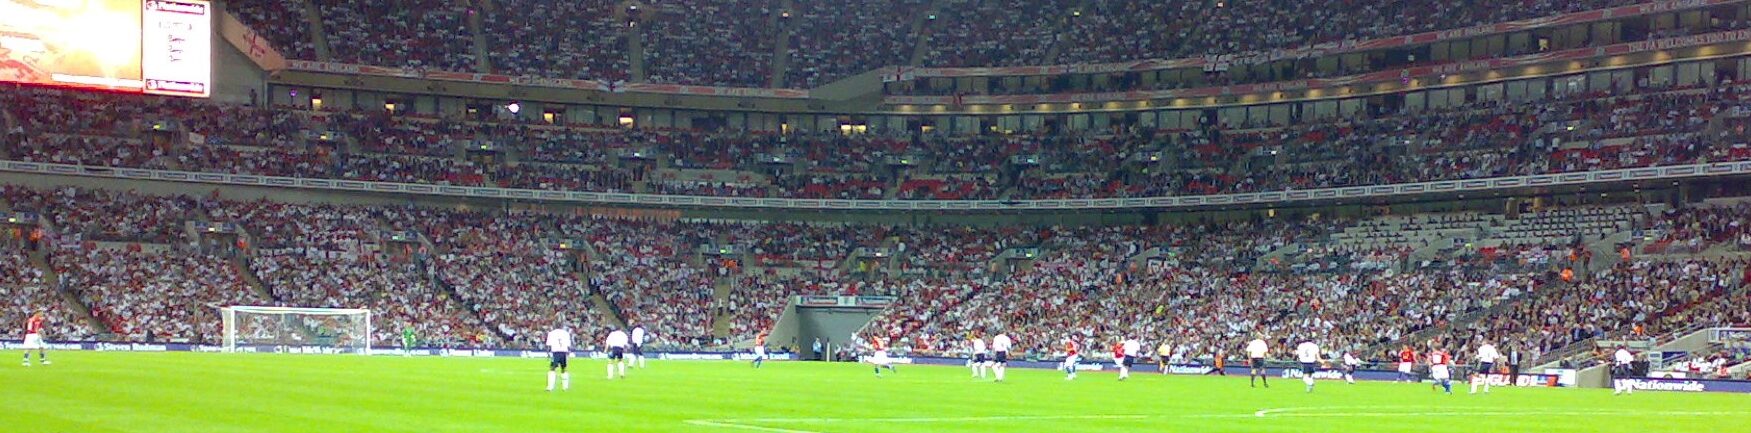 England playing at Wembley